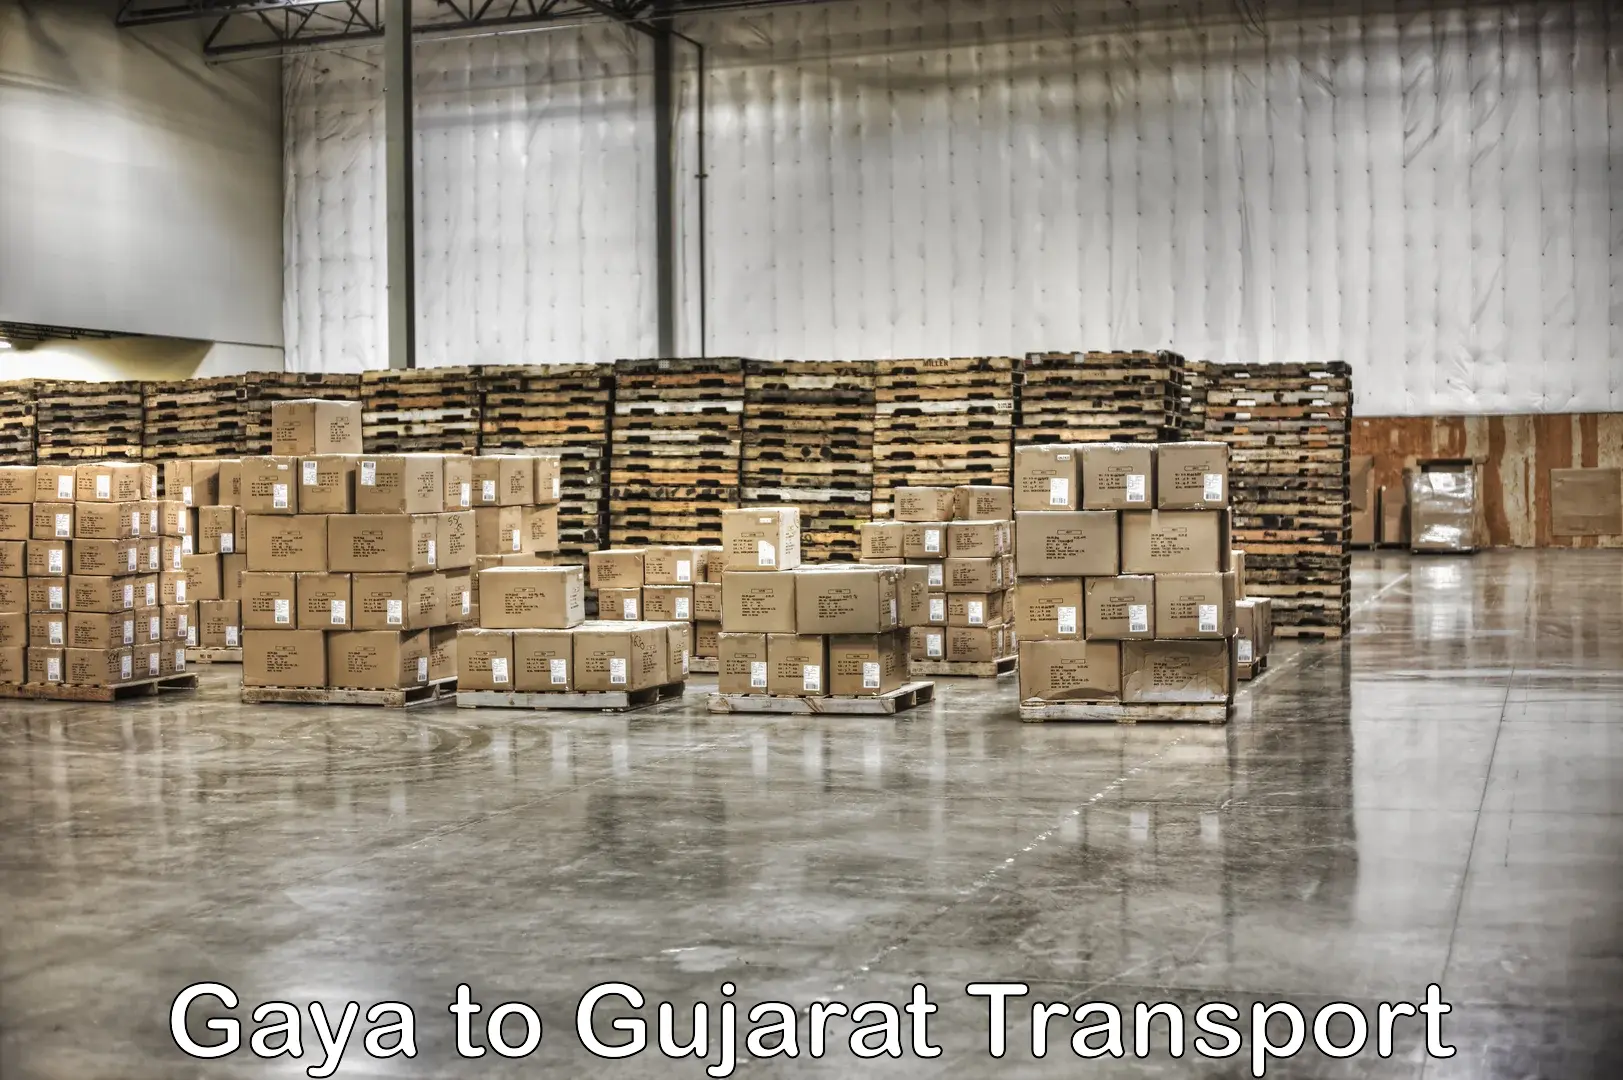 Air freight transport services Gaya to Patan Gujarat